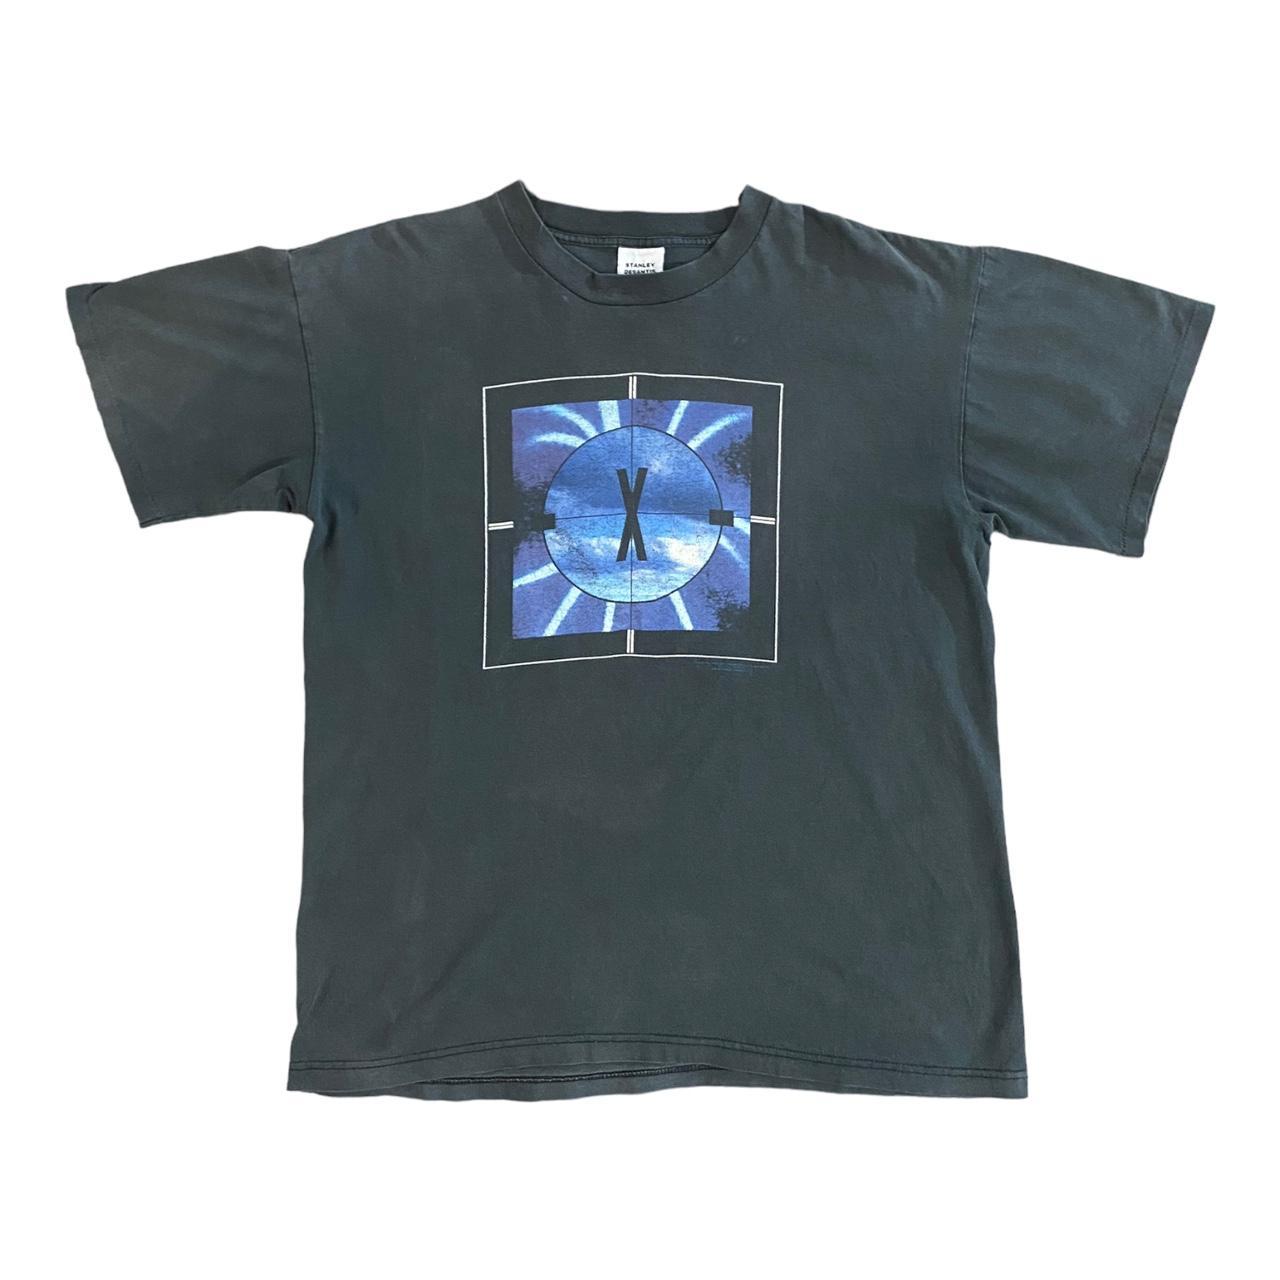 Vintage 90s Stanley DeSantis x The X Files T-Shirt... - Depop